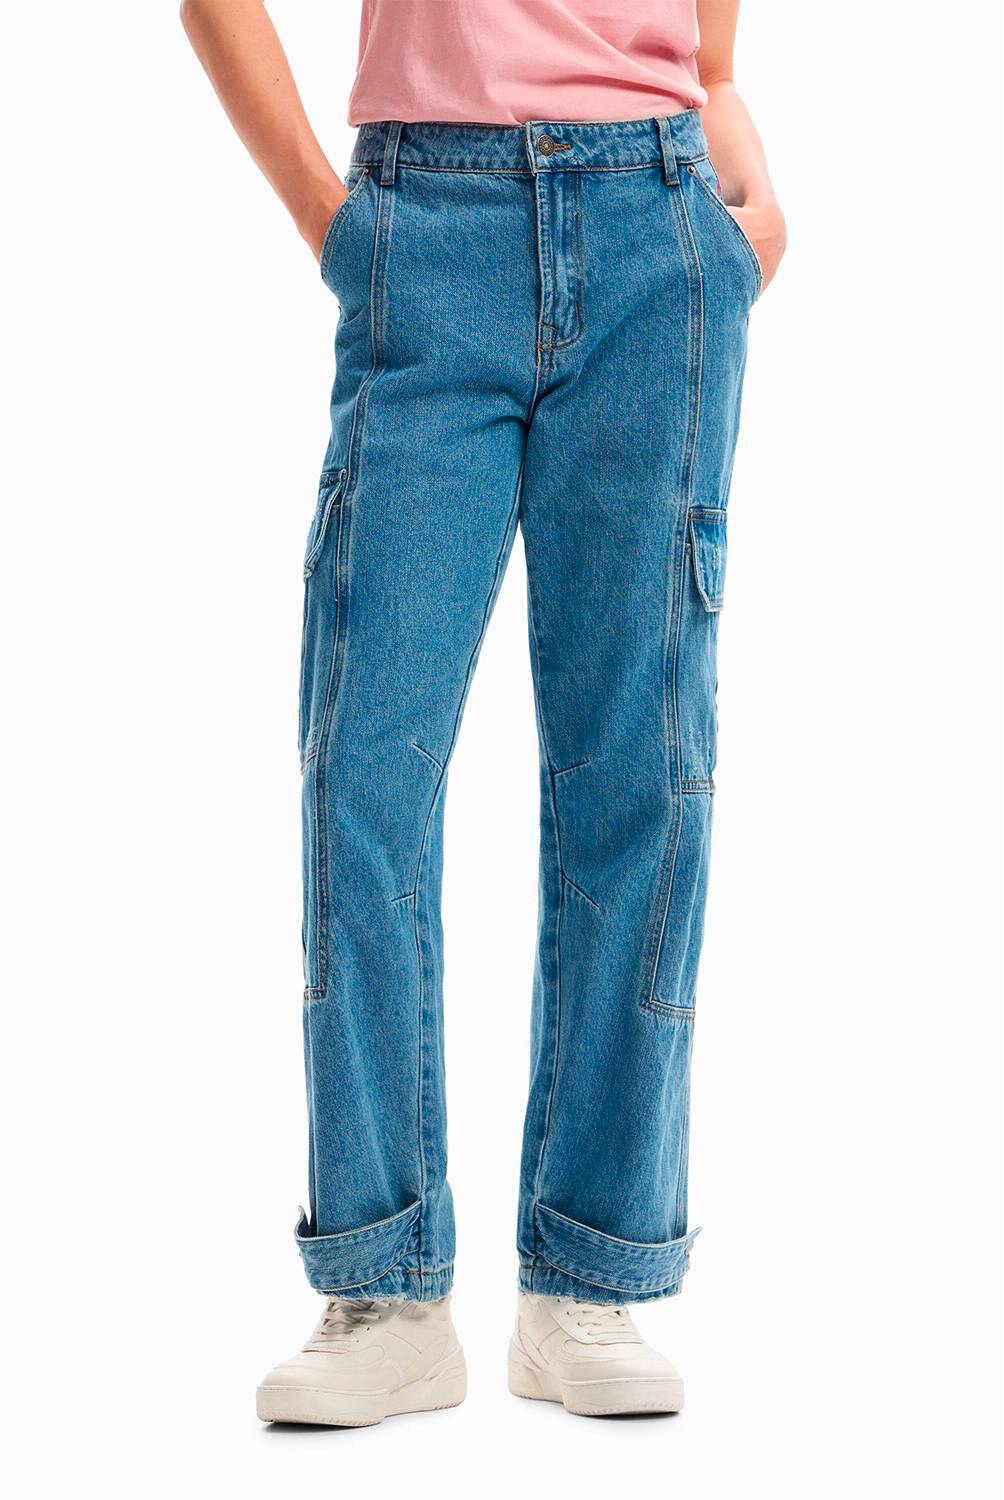 Desigual Desigual Jeans Estampados Algodón Mujer